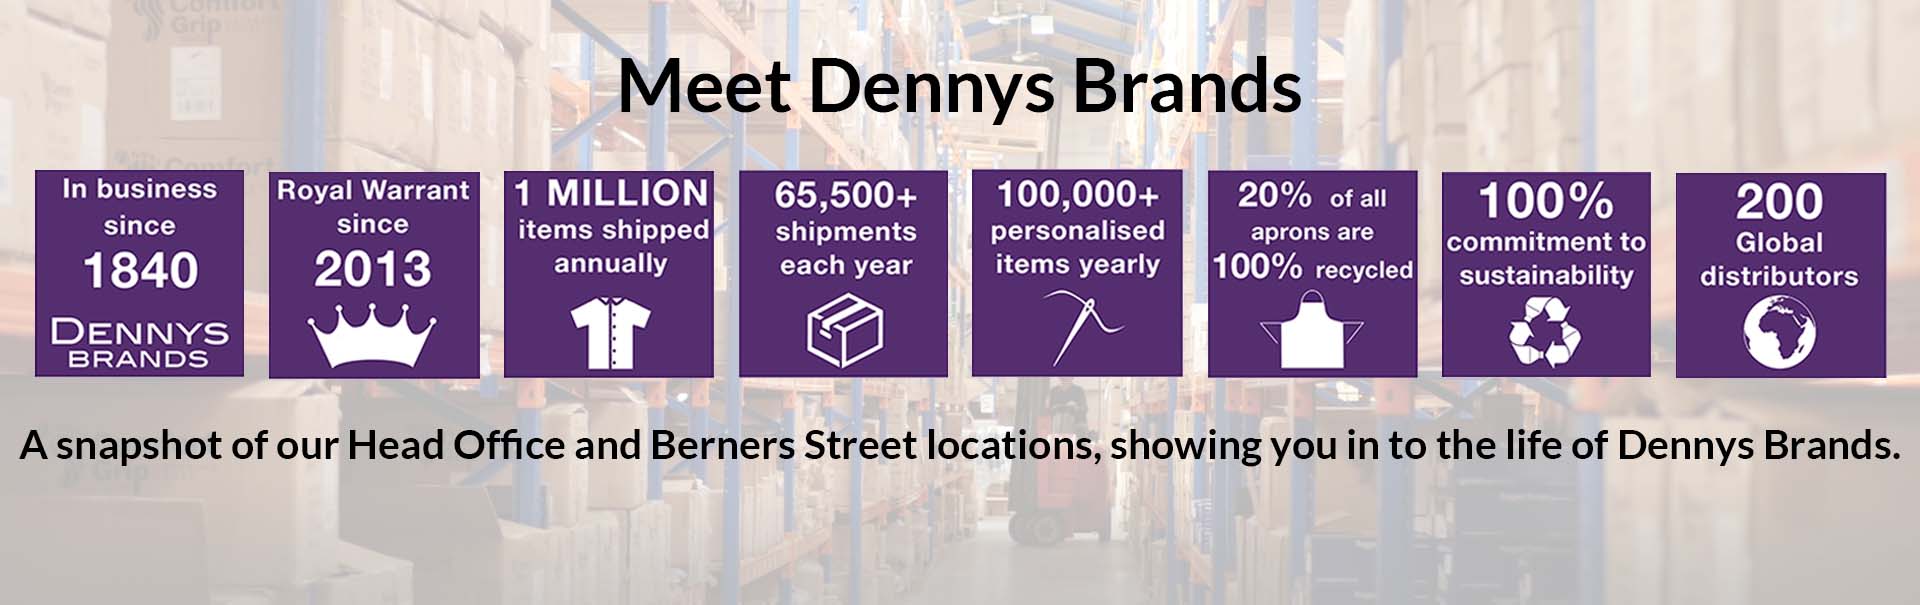 Meet Dennys Brands video